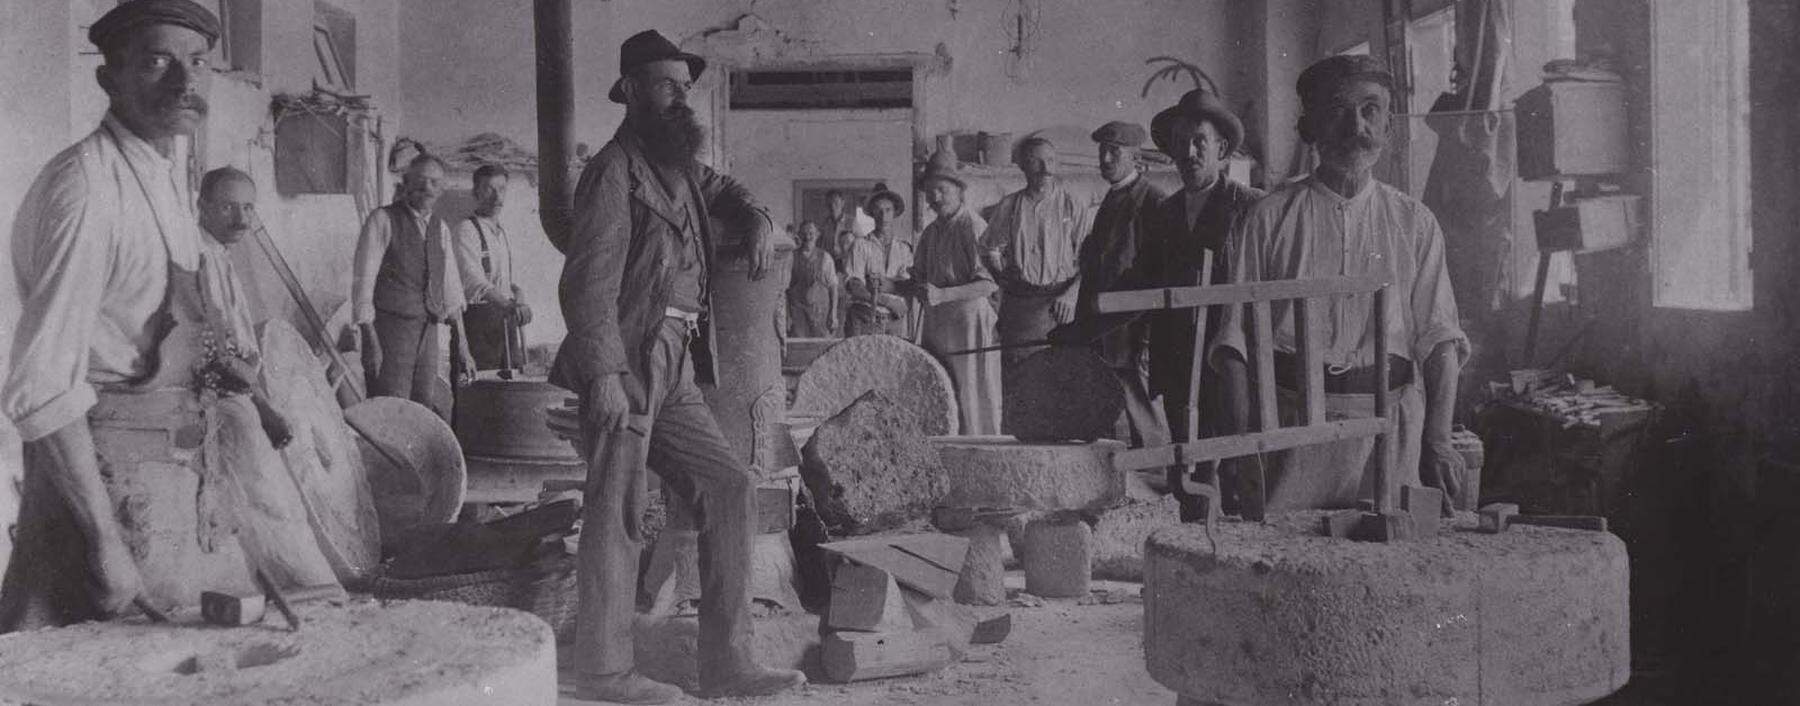 Nach dem Herausbrechen im Steinbruch wurden die Mühlsteine in der Werkstatt zurechtgehauen. Aufnahme aus Perg, 1910.